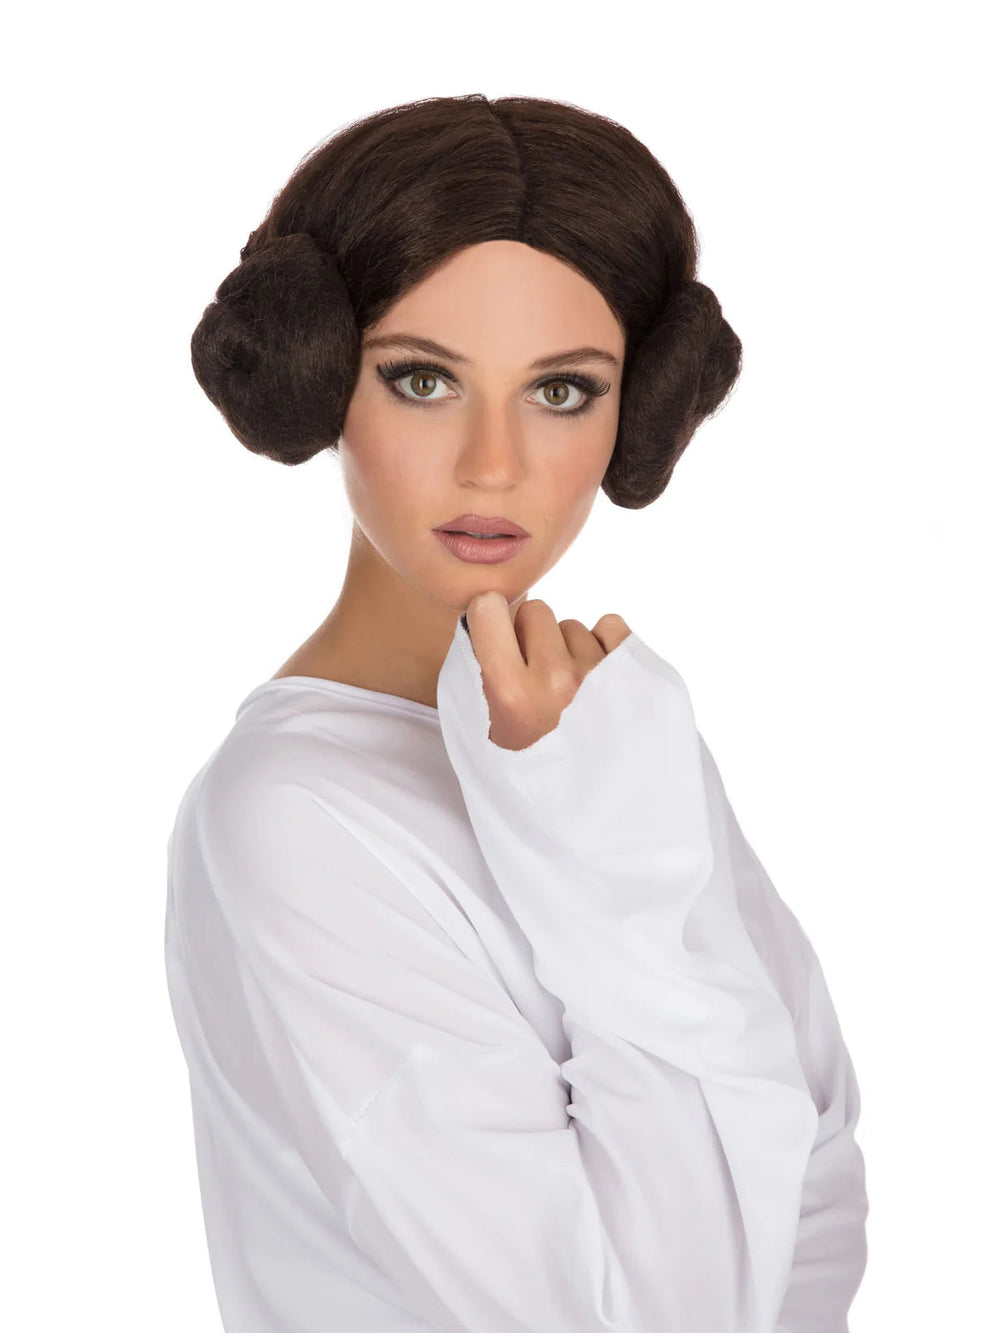 Space Princess Wig Leia Side Buns_2